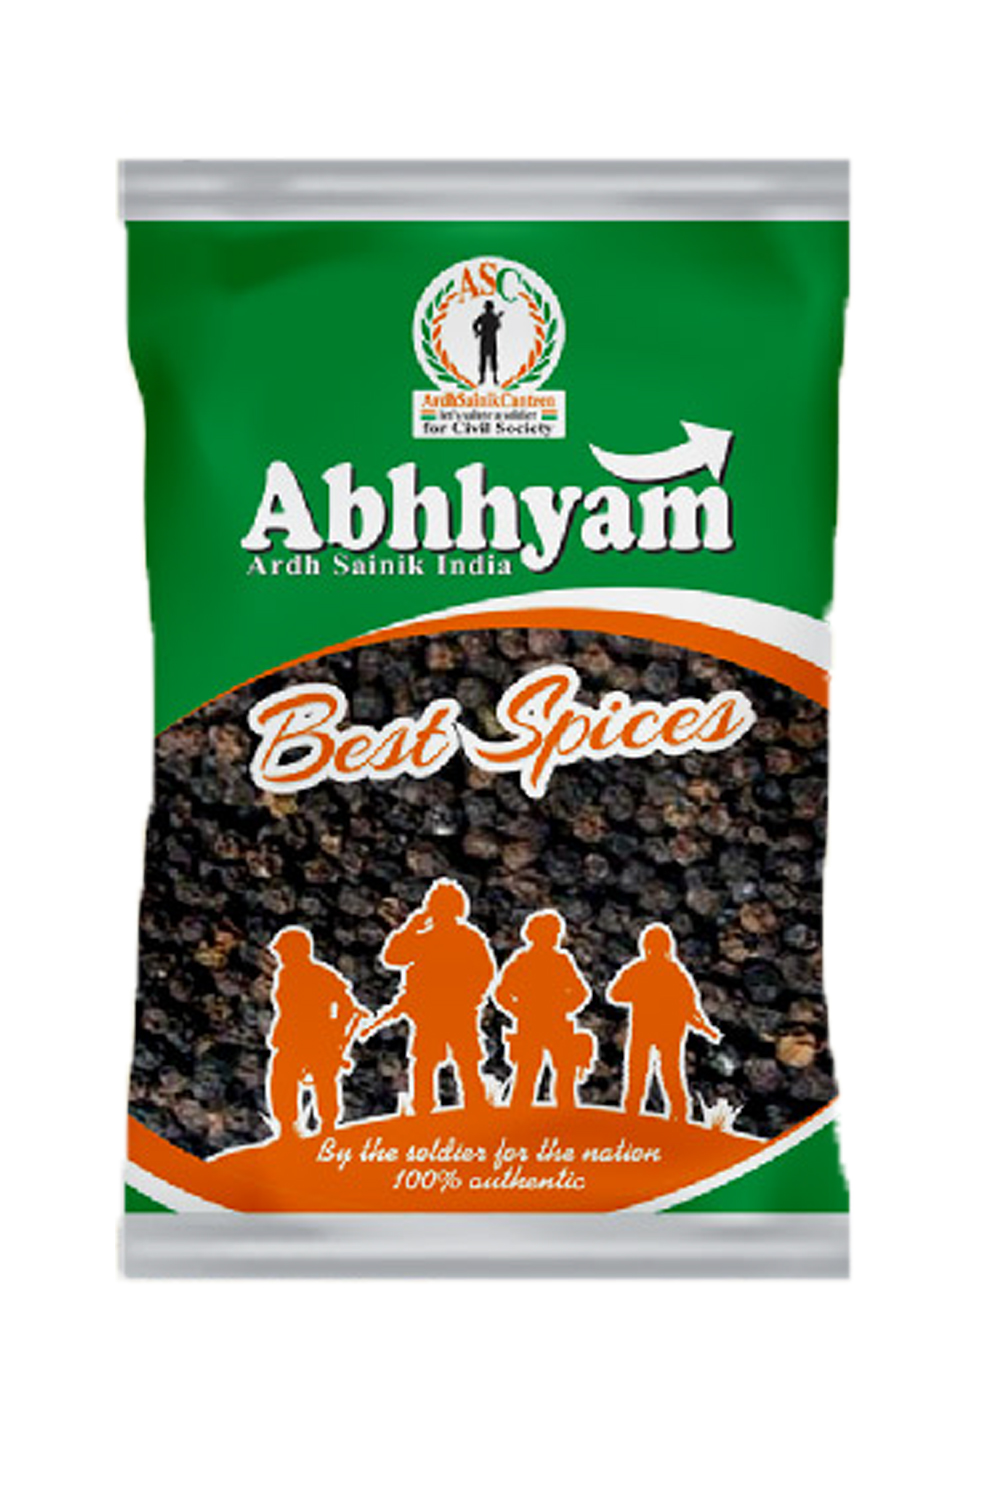 Ardh Sainik India Kaali Mirch (Black Pepper) 100Gm